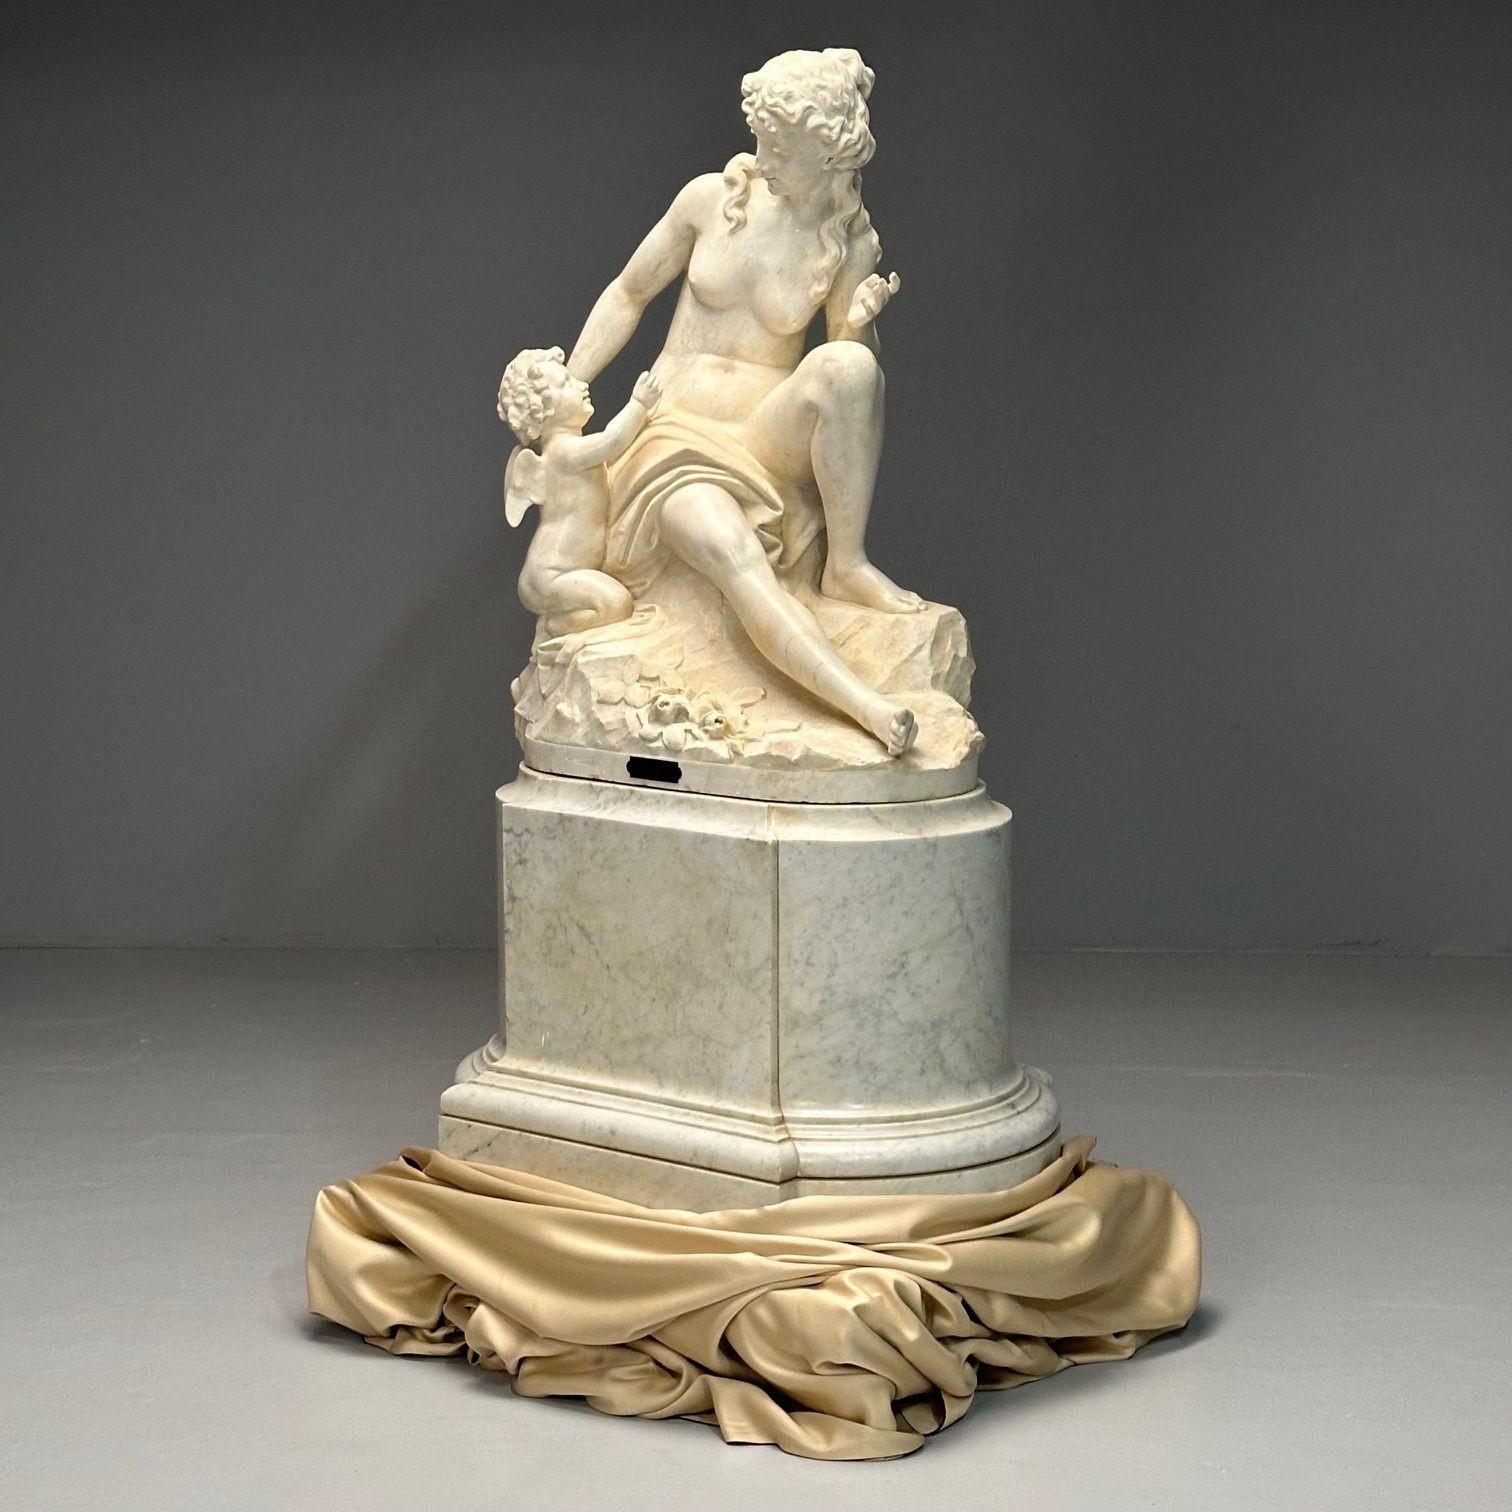 Jean-Marie Boucher, Venus und Amor Marmorstatue, weißer Marmor, Romantik, um 1910
 
Jean Boucher fein detaillierte Marmorskulptur auf einem beeindruckenden Marmorsockel. Plakette am Sockel beschriftet: VENUS UND CUPIDO / JEAN-MARIE BOUCHER
